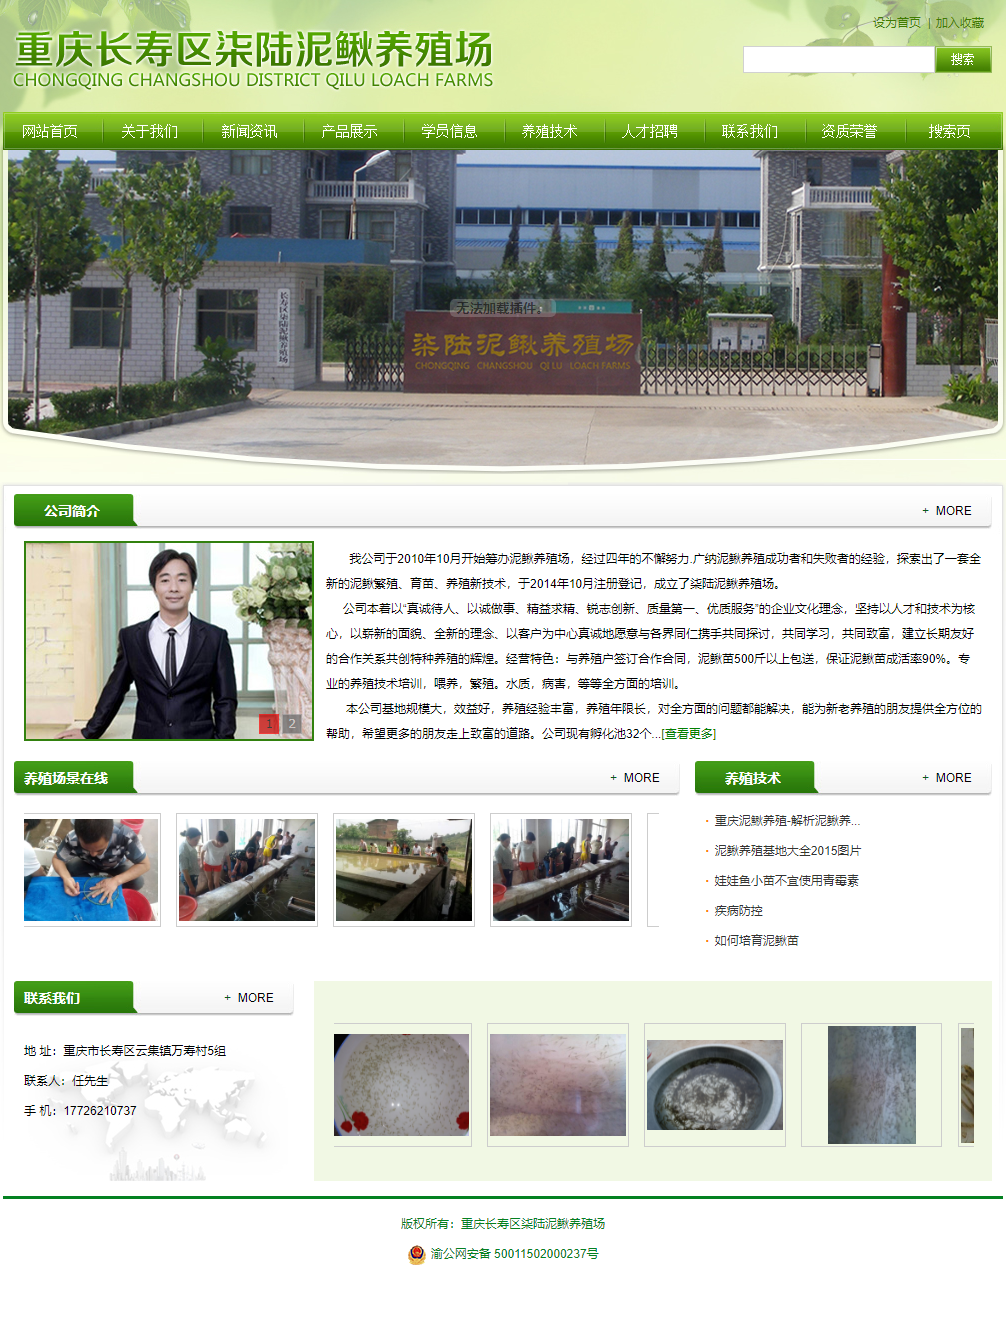 重庆市长寿区柒陆泥鳅养殖场网站案例